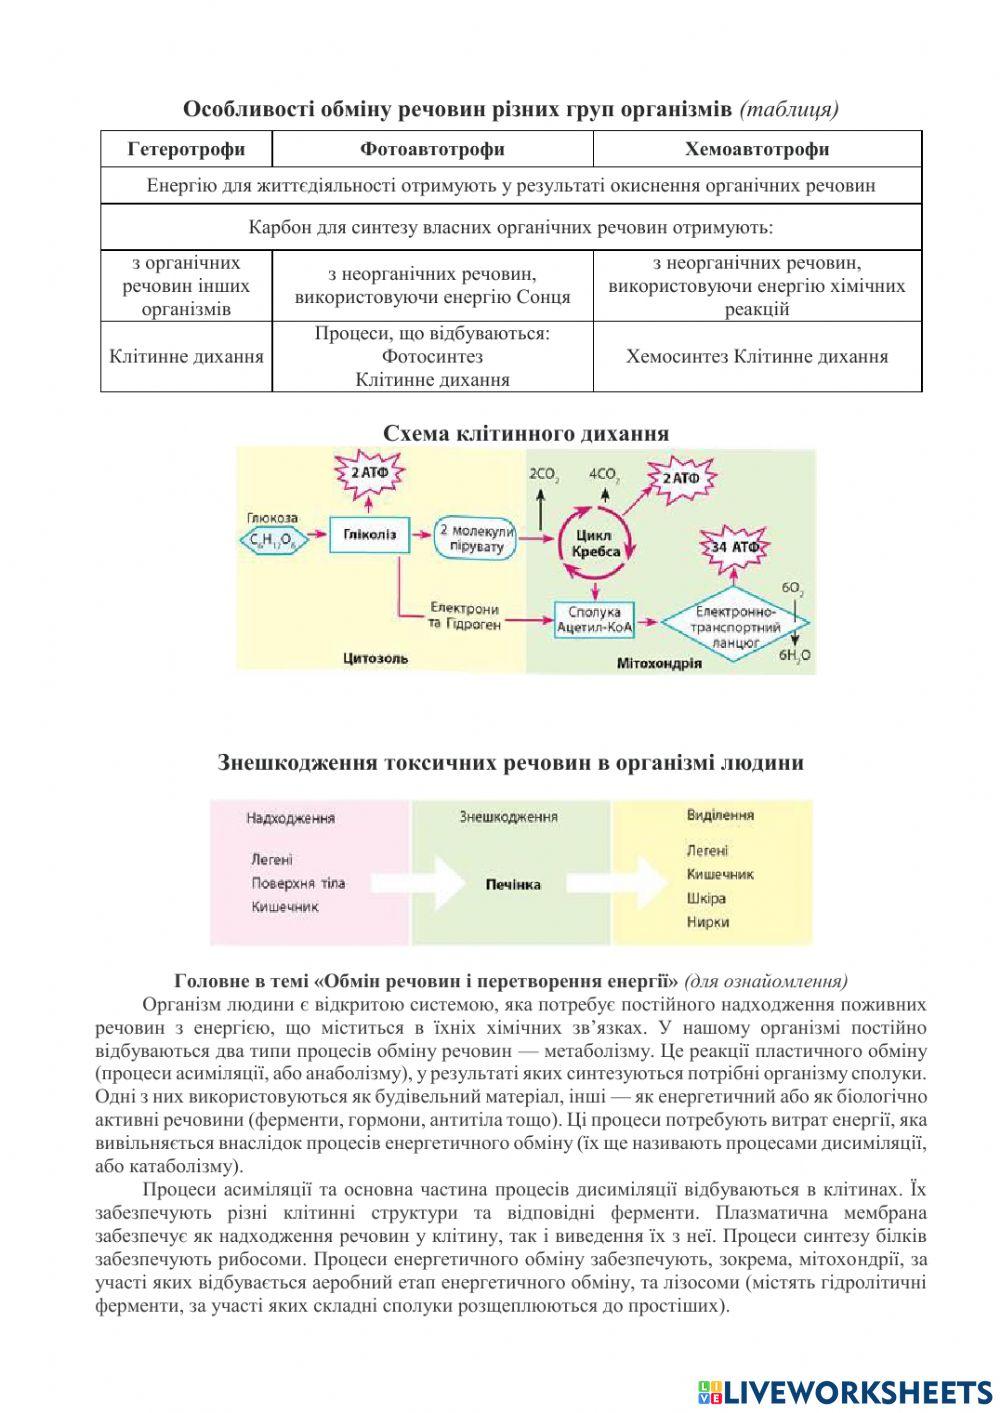 Практична робота 1 Складання схем обміну вуглеводів, ліпідів та білків у організмі людини